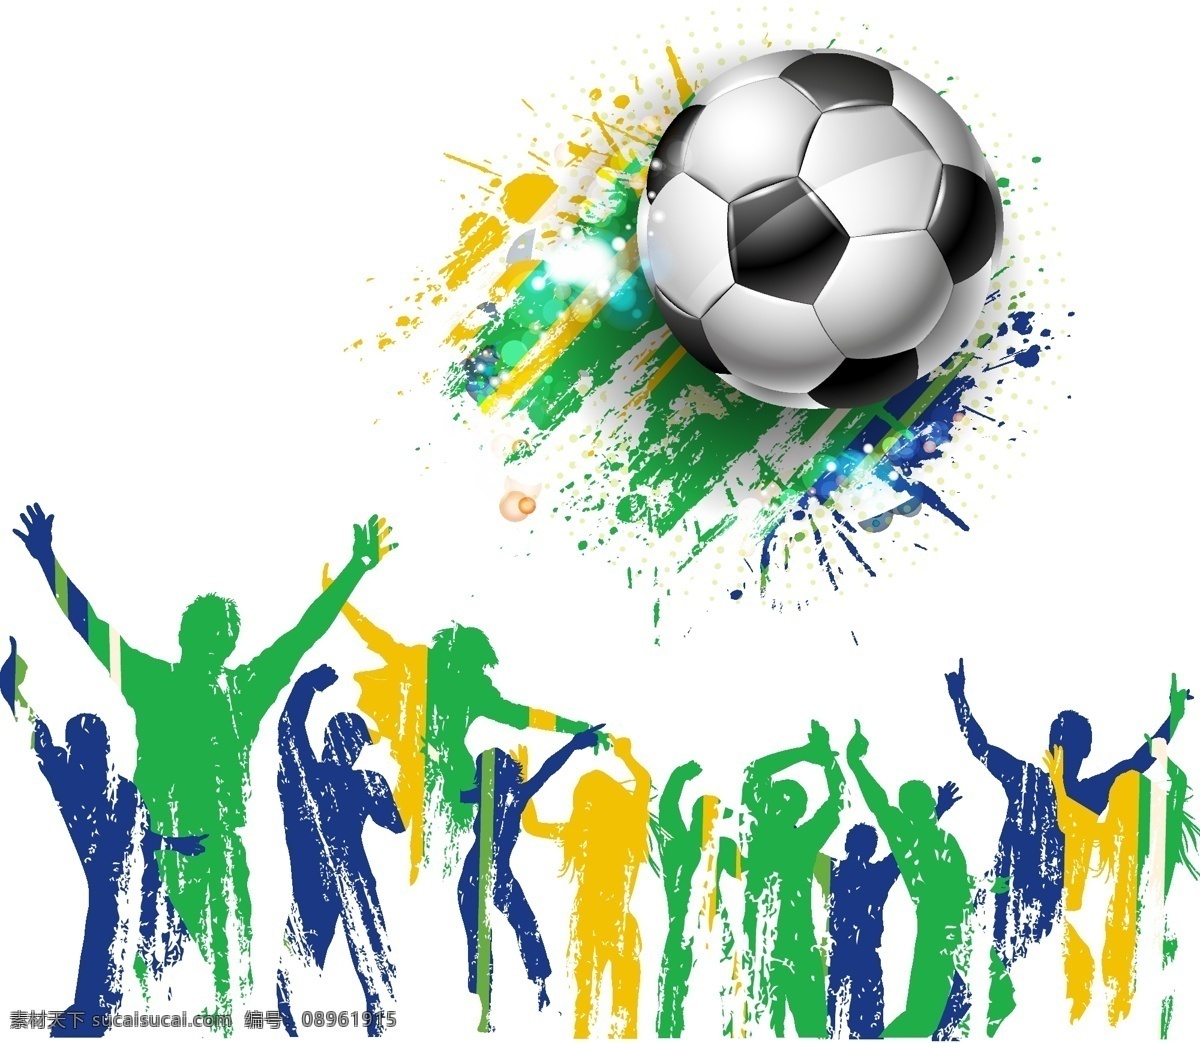 墨迹 喷溅 足球 模板下载 世界杯 2014 墨迹喷溅 插图人物 体育运动 生活百科 矢量素材 白色